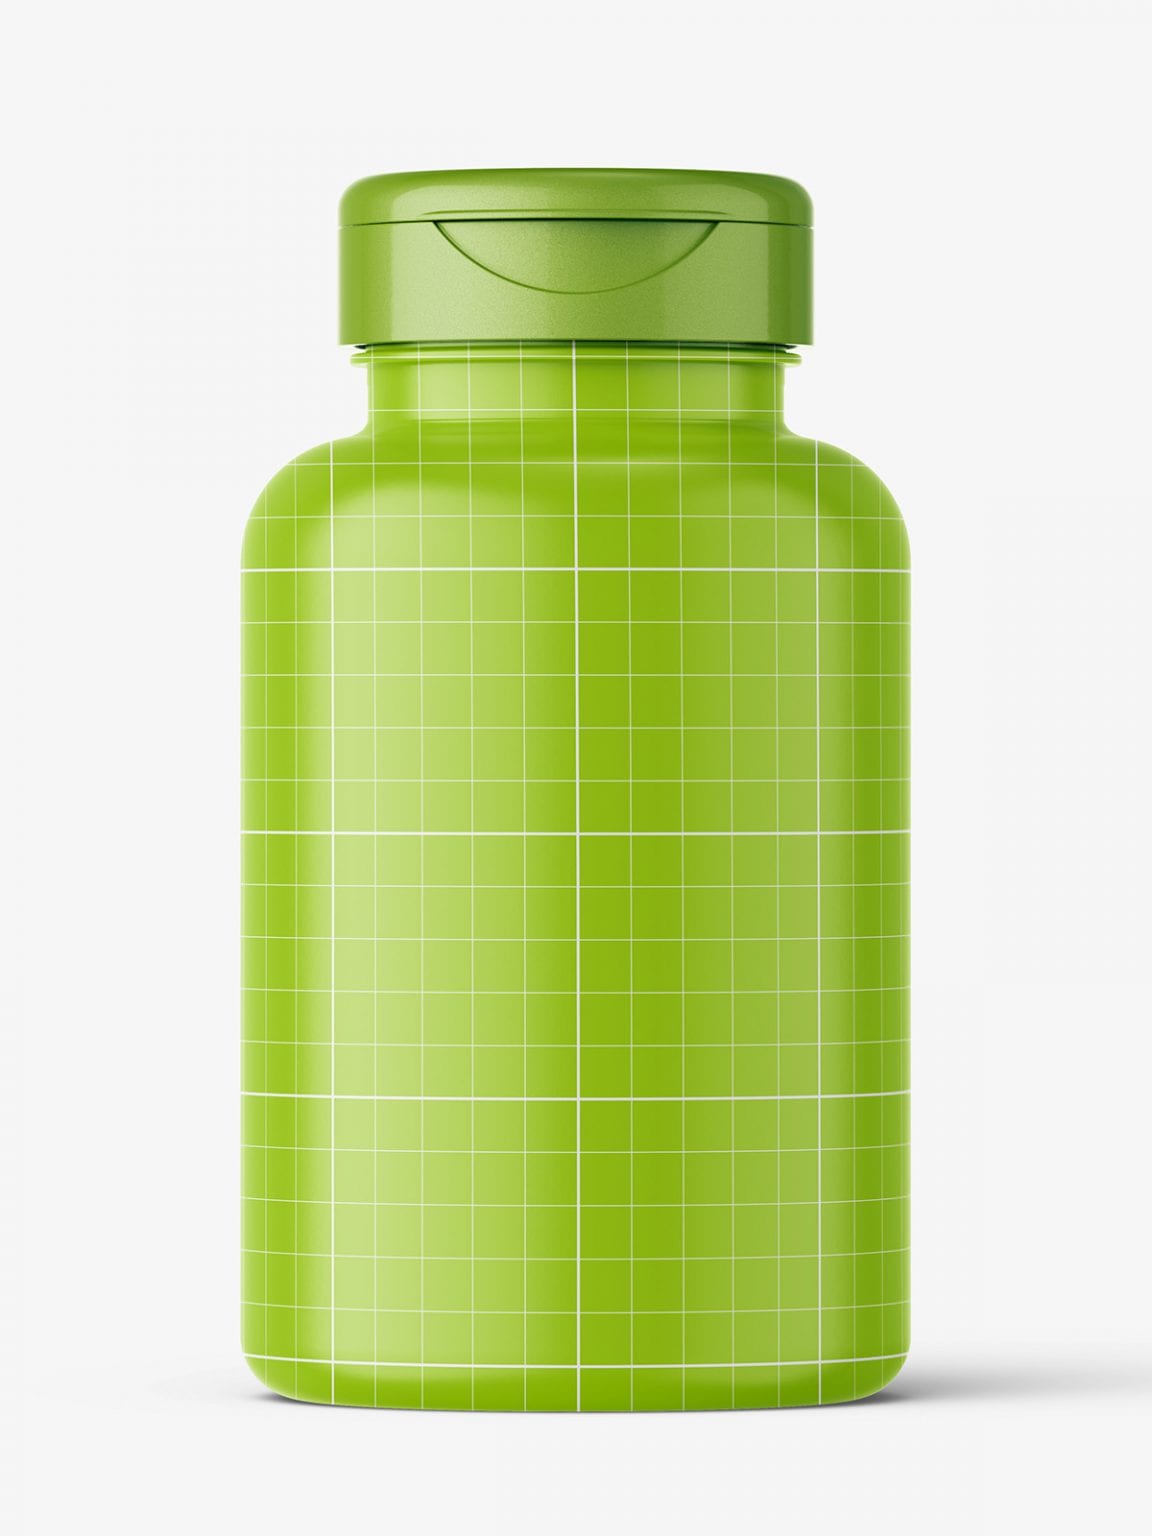 Download Clear plastic jar mockup - Smarty Mockups